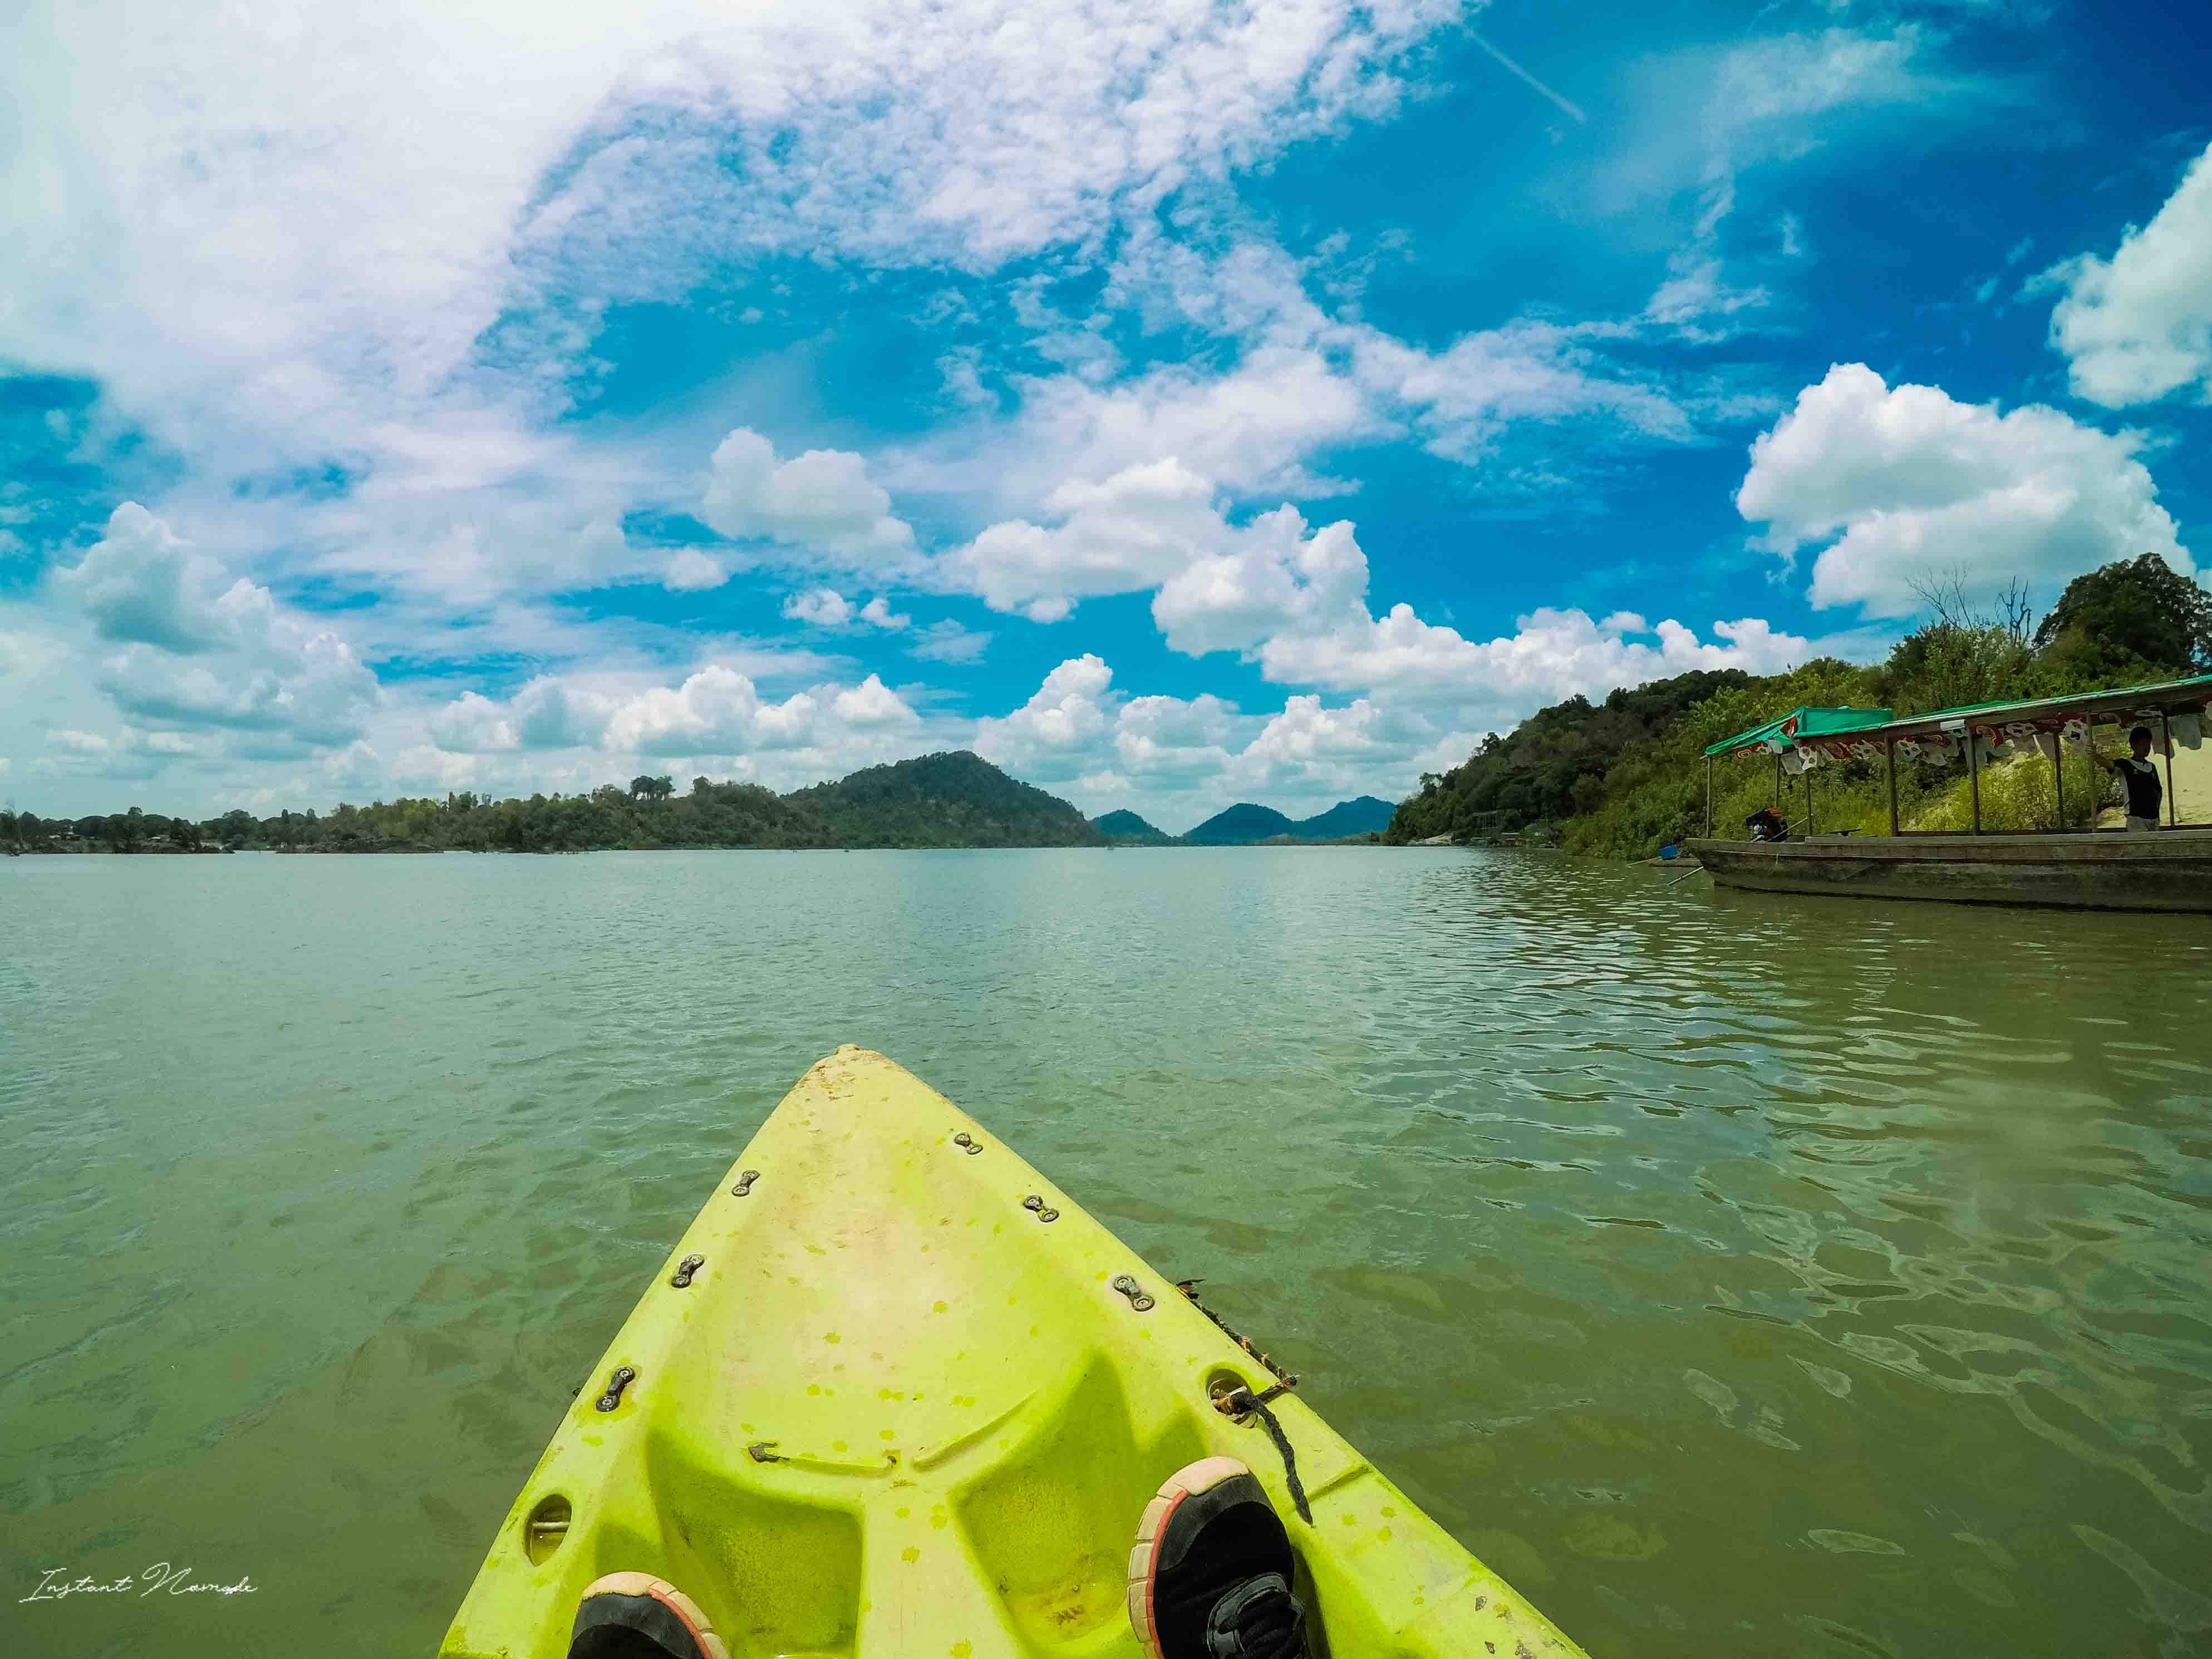 kayak 4000 îles laos